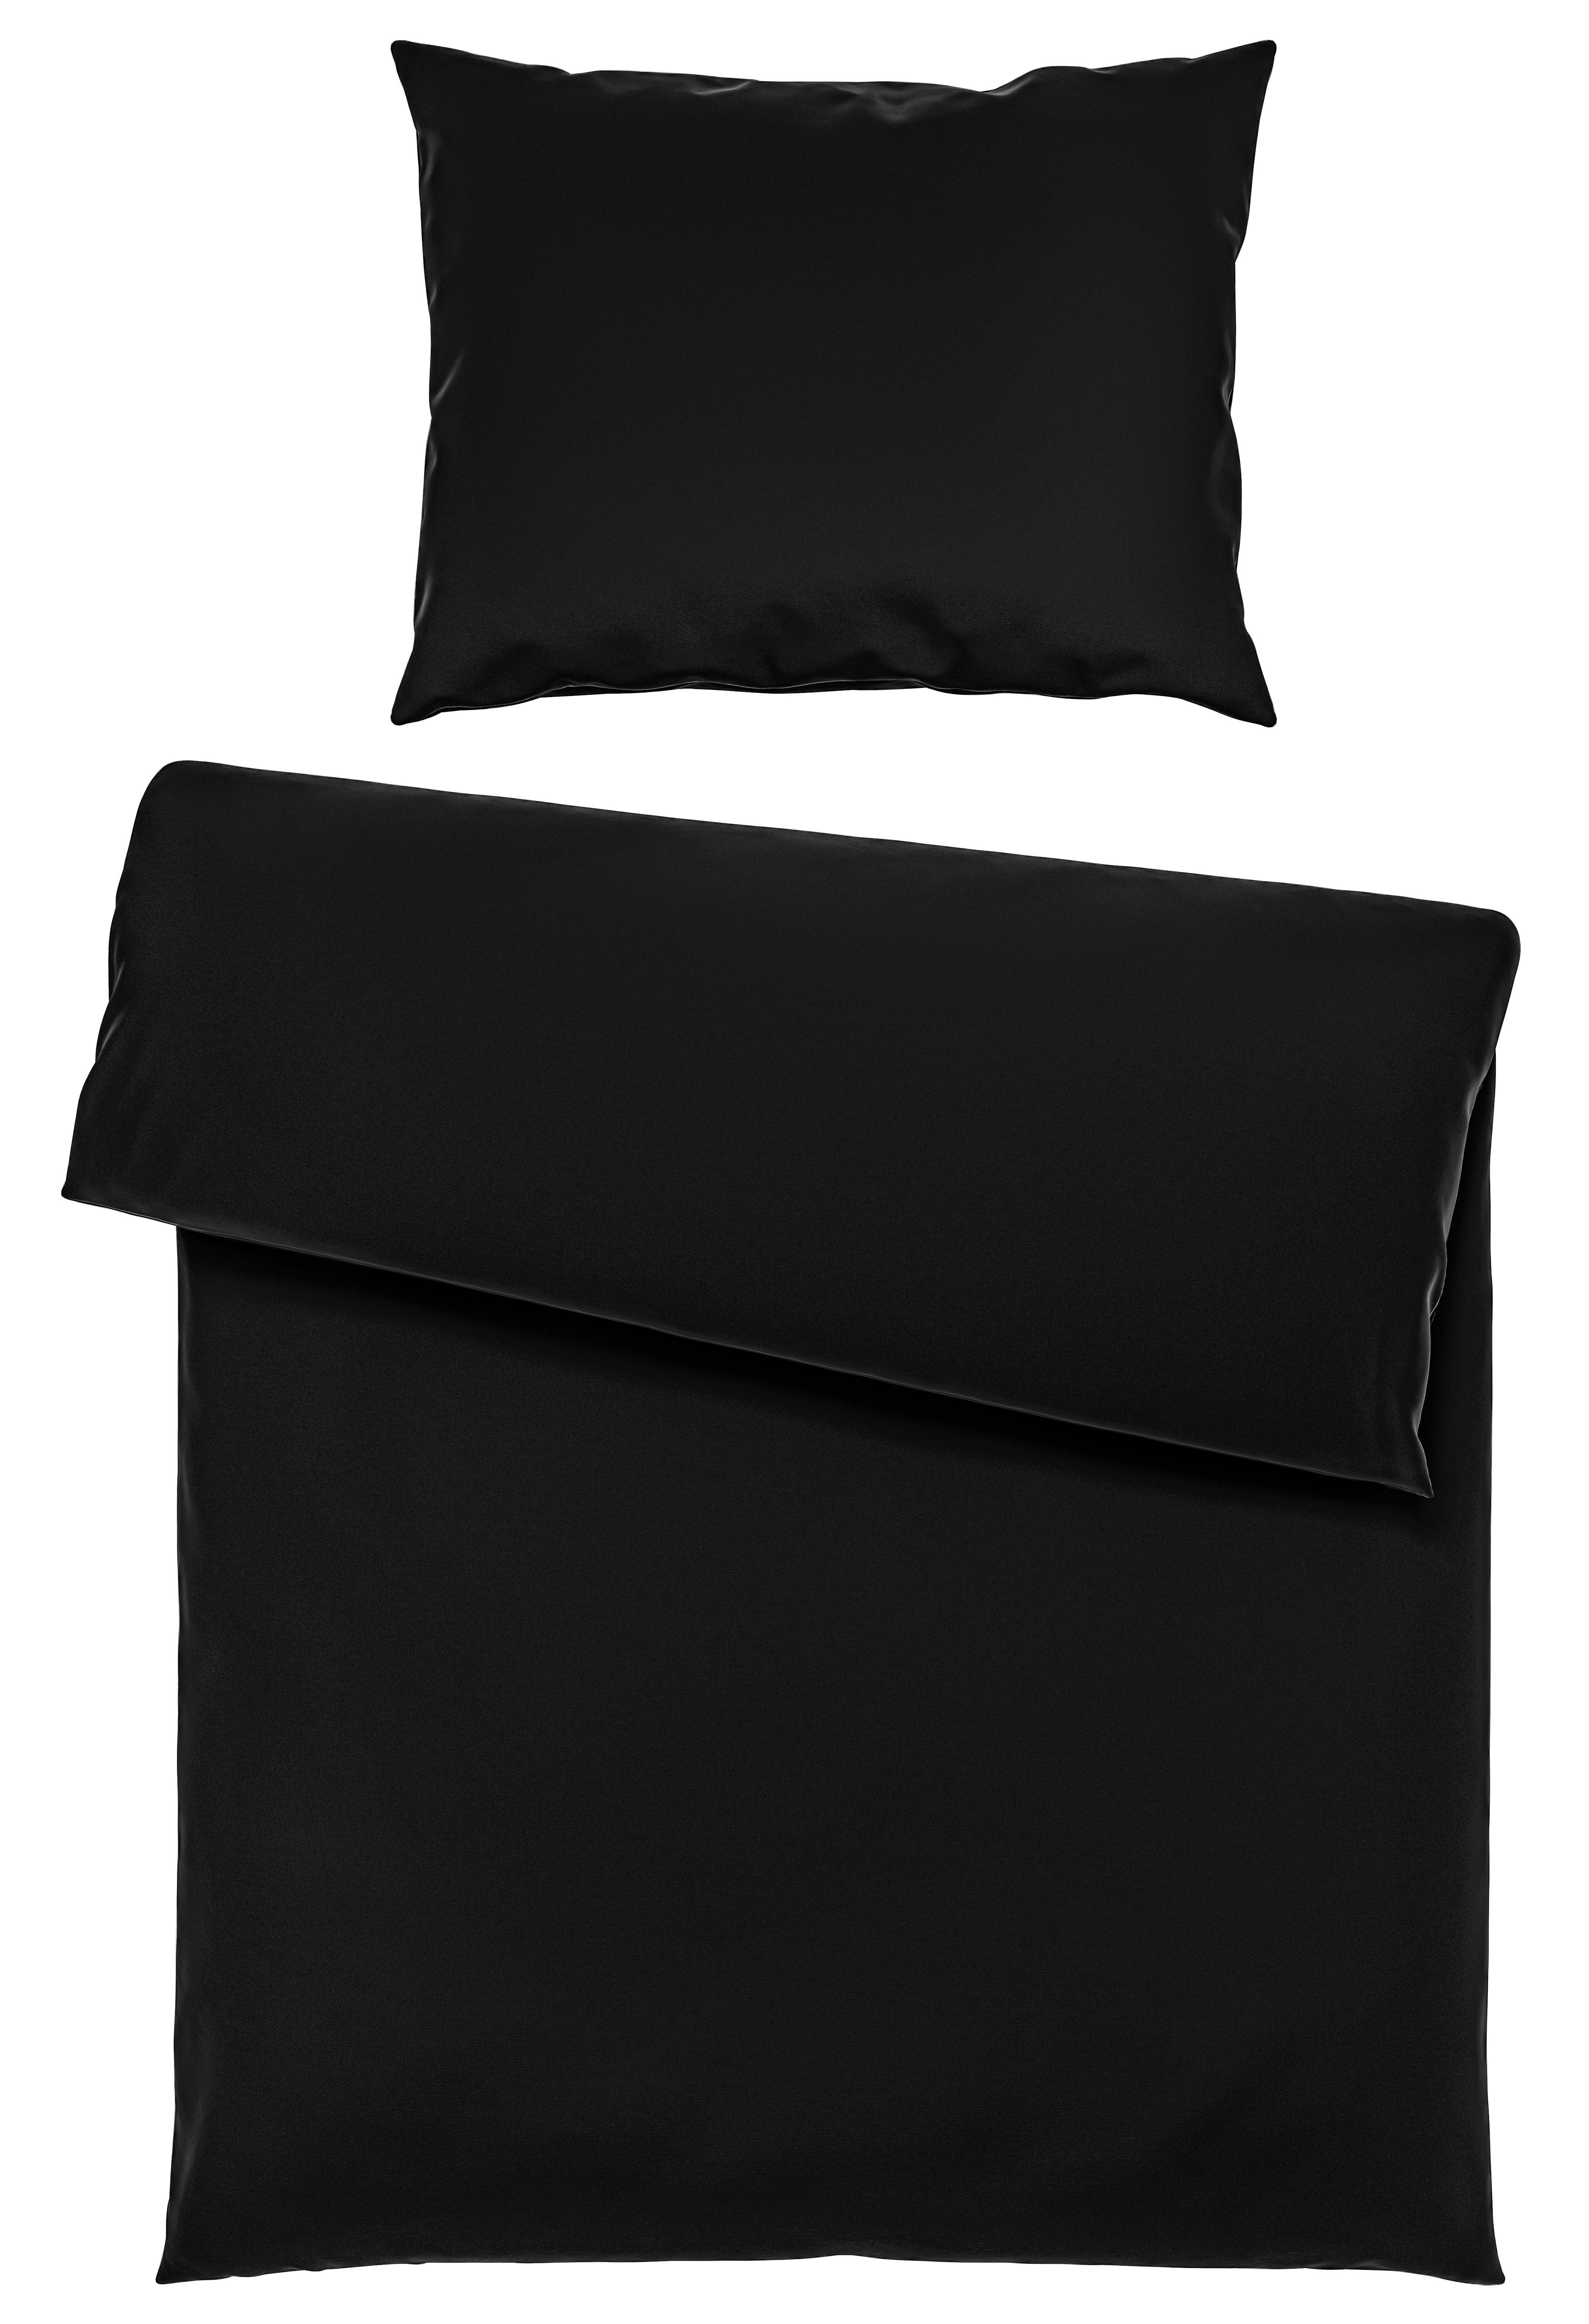 LENJERIE DE PAT IRIS - negru, textil (140/200cm) - Modern Living